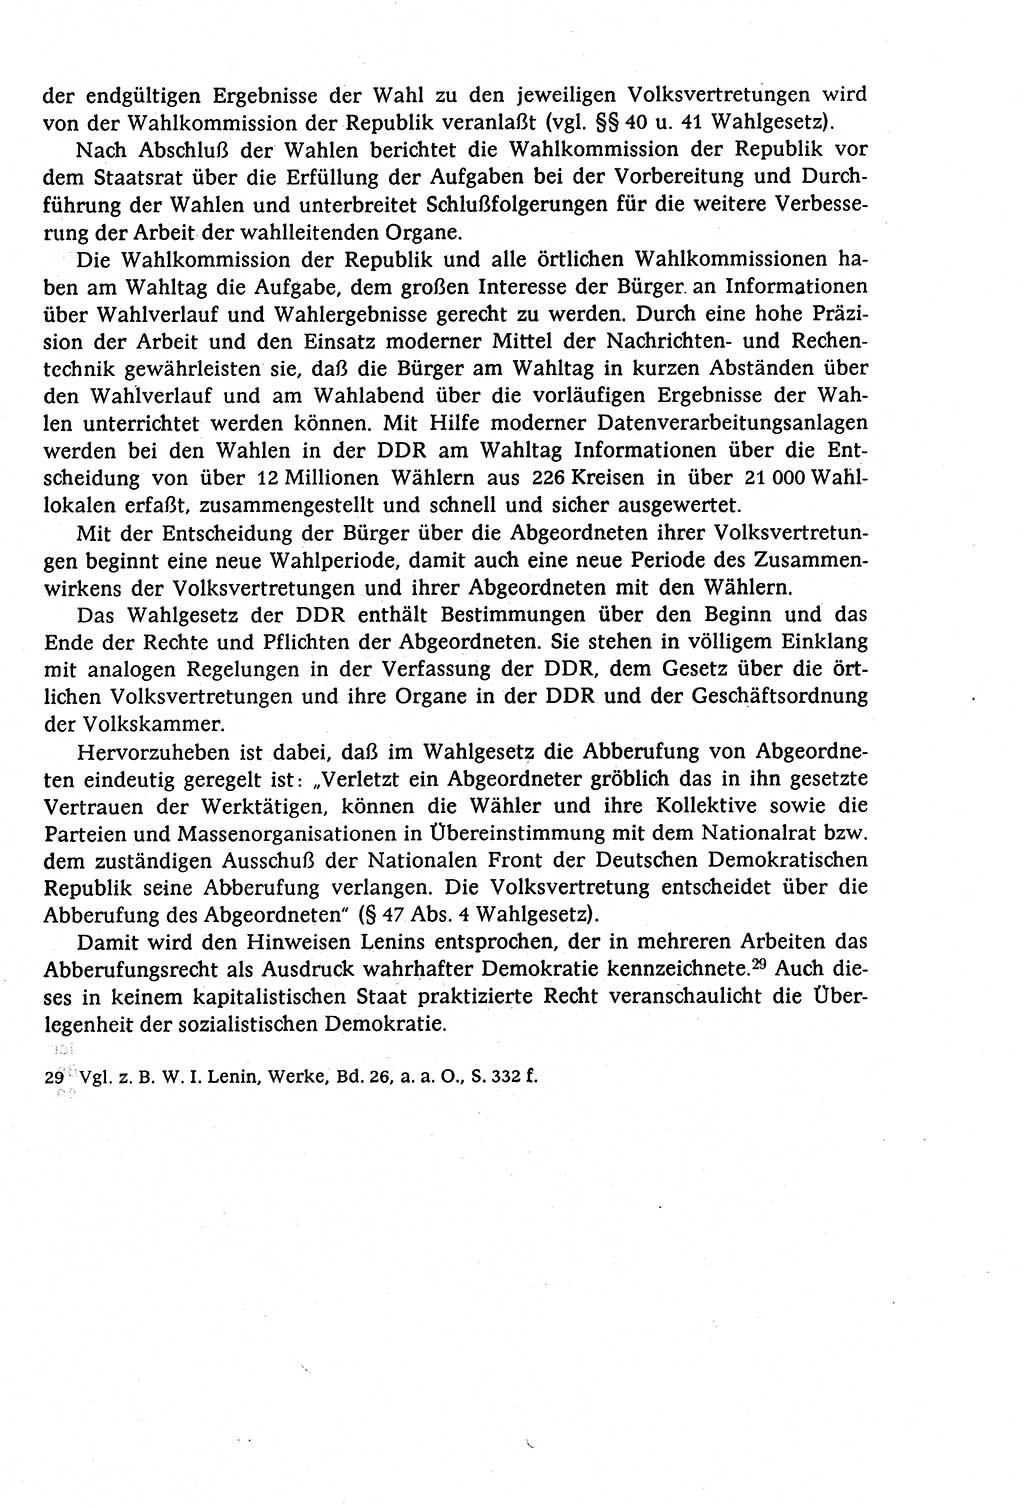 Staatsrecht der DDR (Deutsche Demokratische Republik), Lehrbuch 1977, Seite 253 (St.-R. DDR Lb. 1977, S. 253)